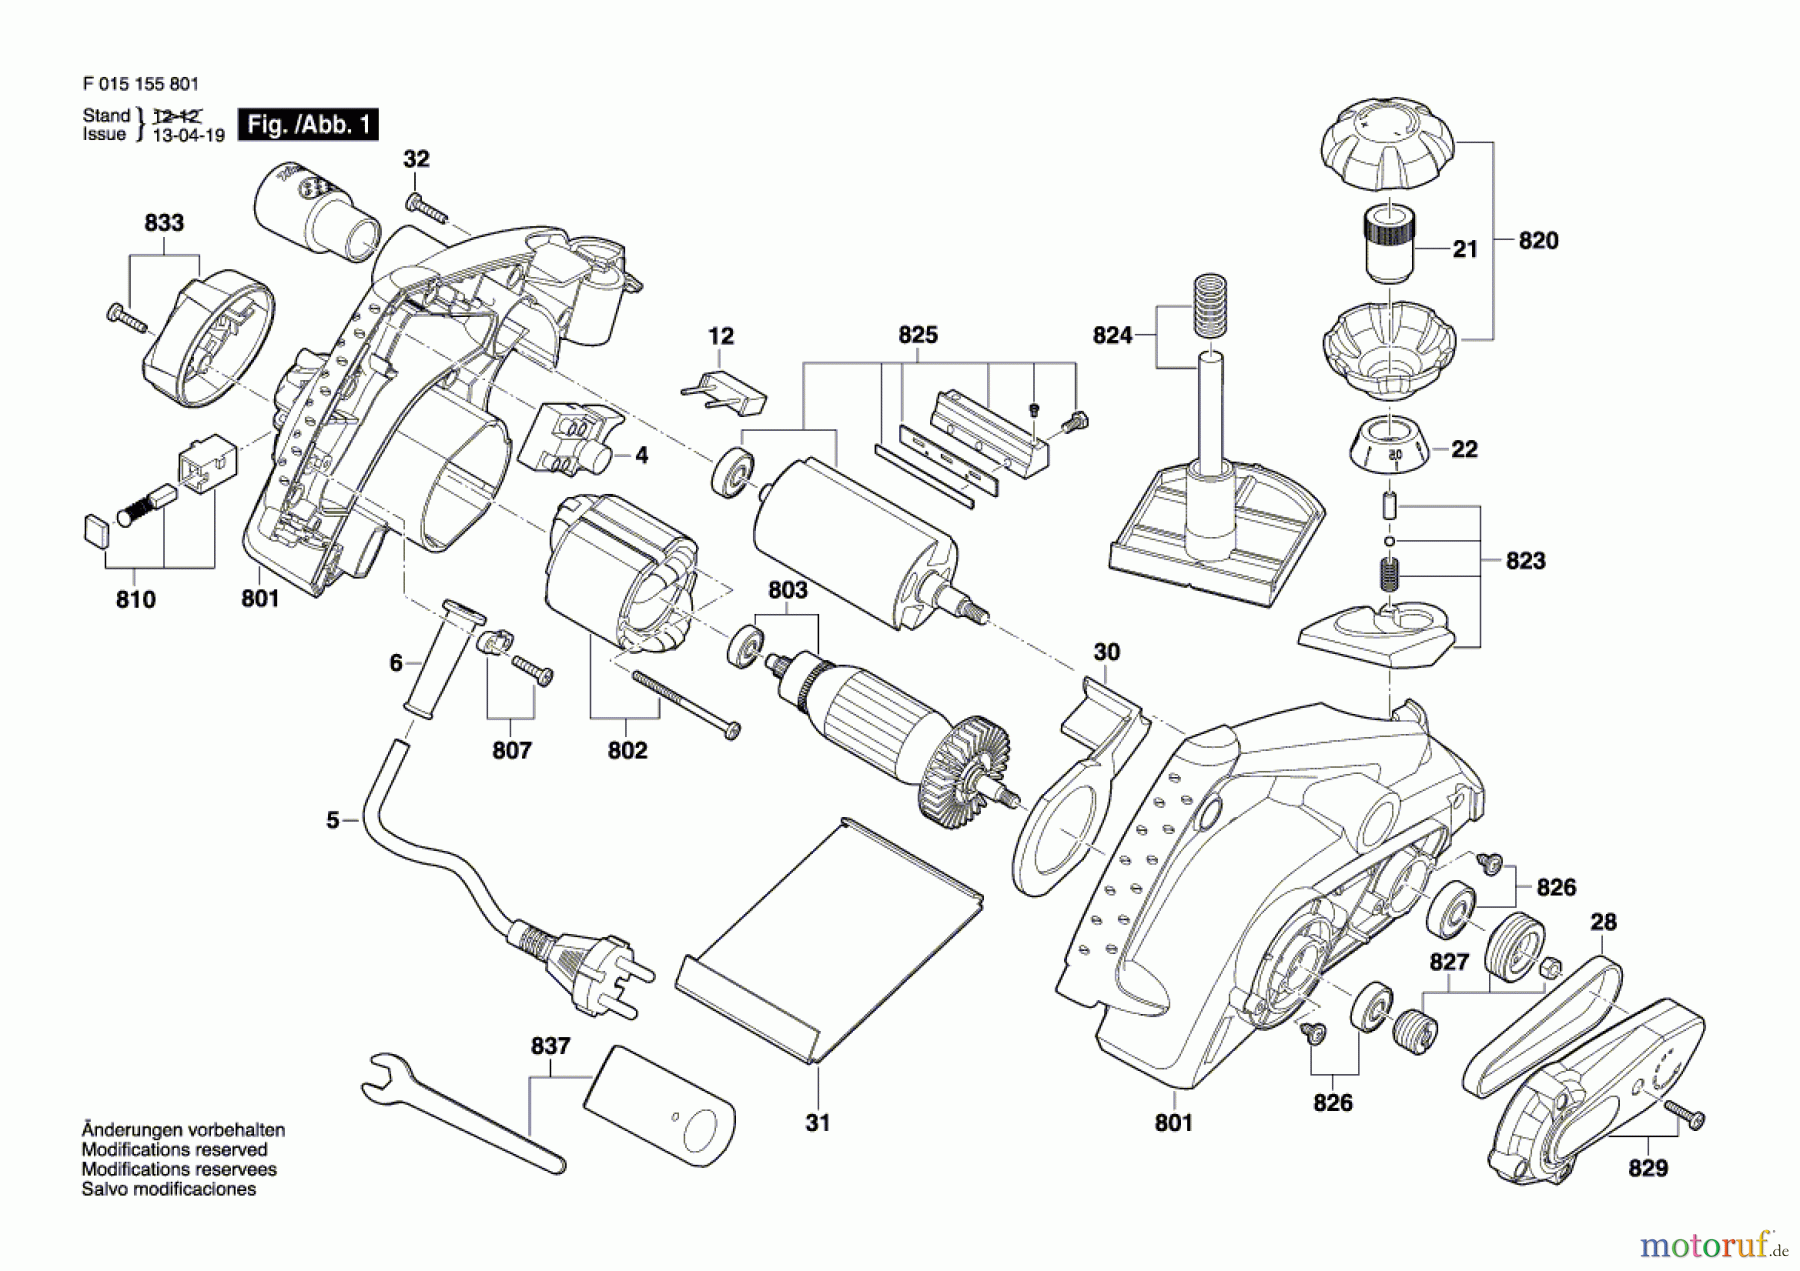  Bosch Werkzeug Handhobel 1558 Seite 1